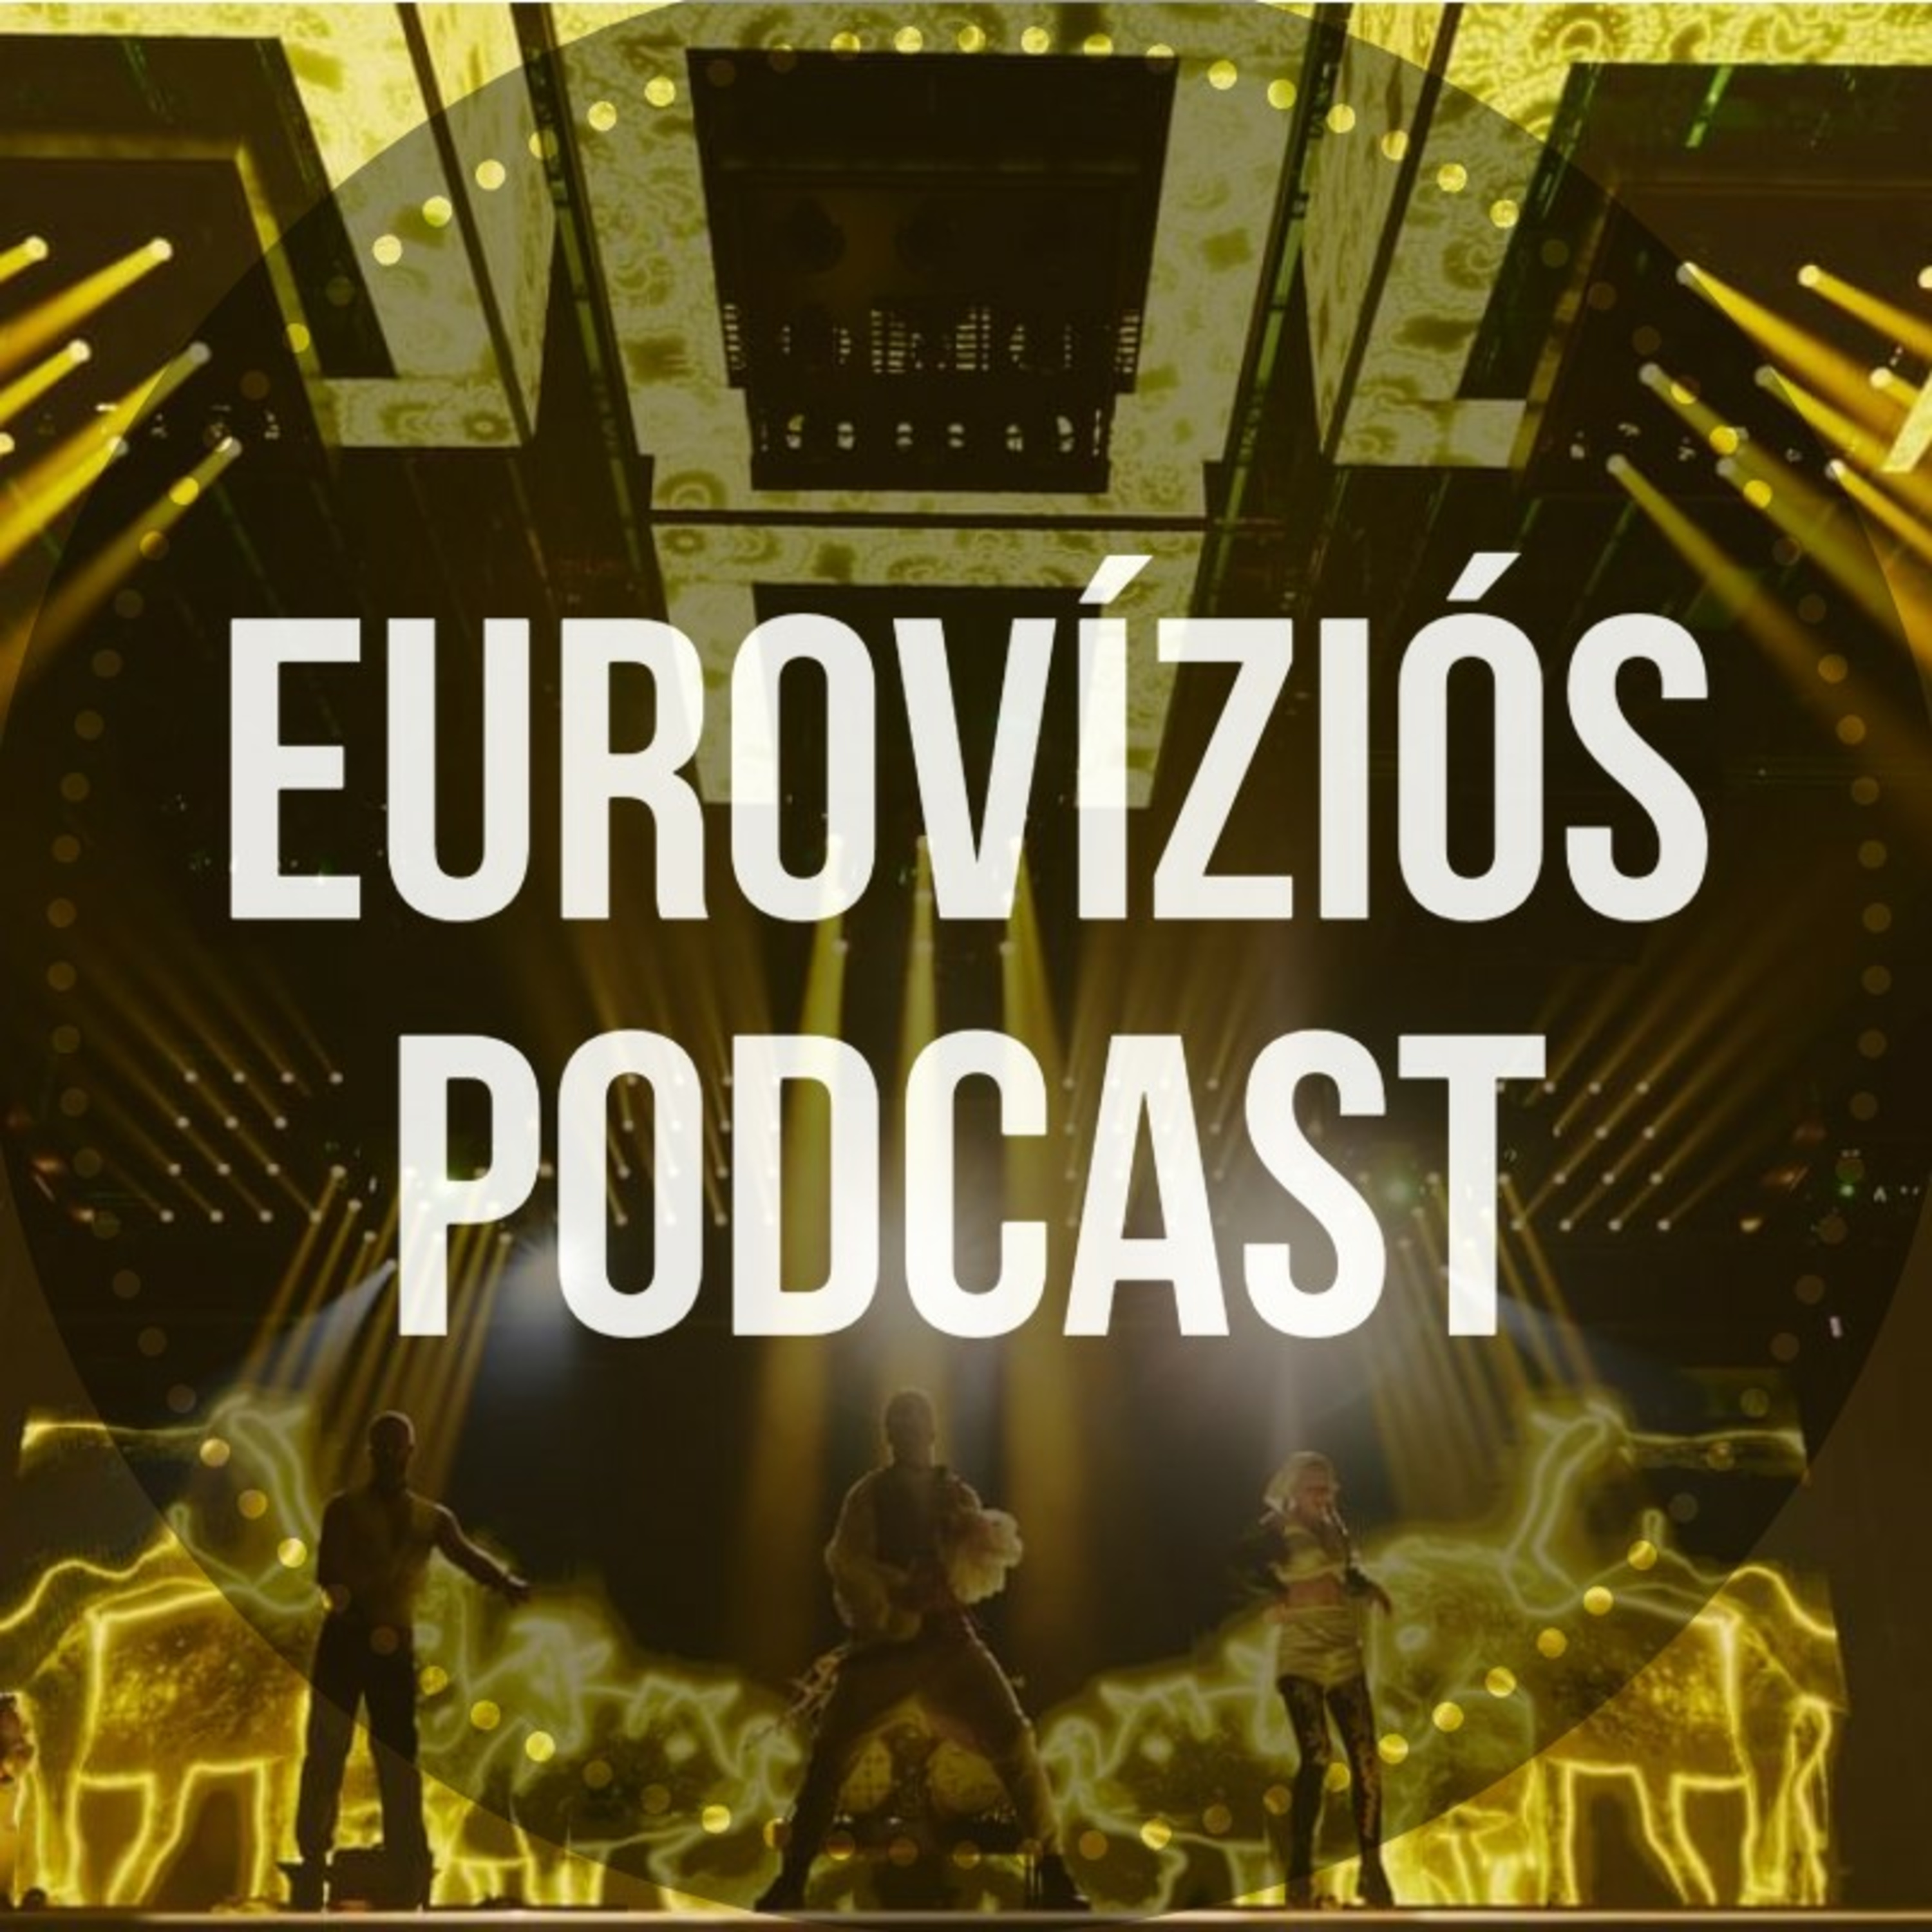 Eurovíziós Podcast - 6. rész - Lakatos Levente már tudja, ki lesz az Eurovízió győztese?